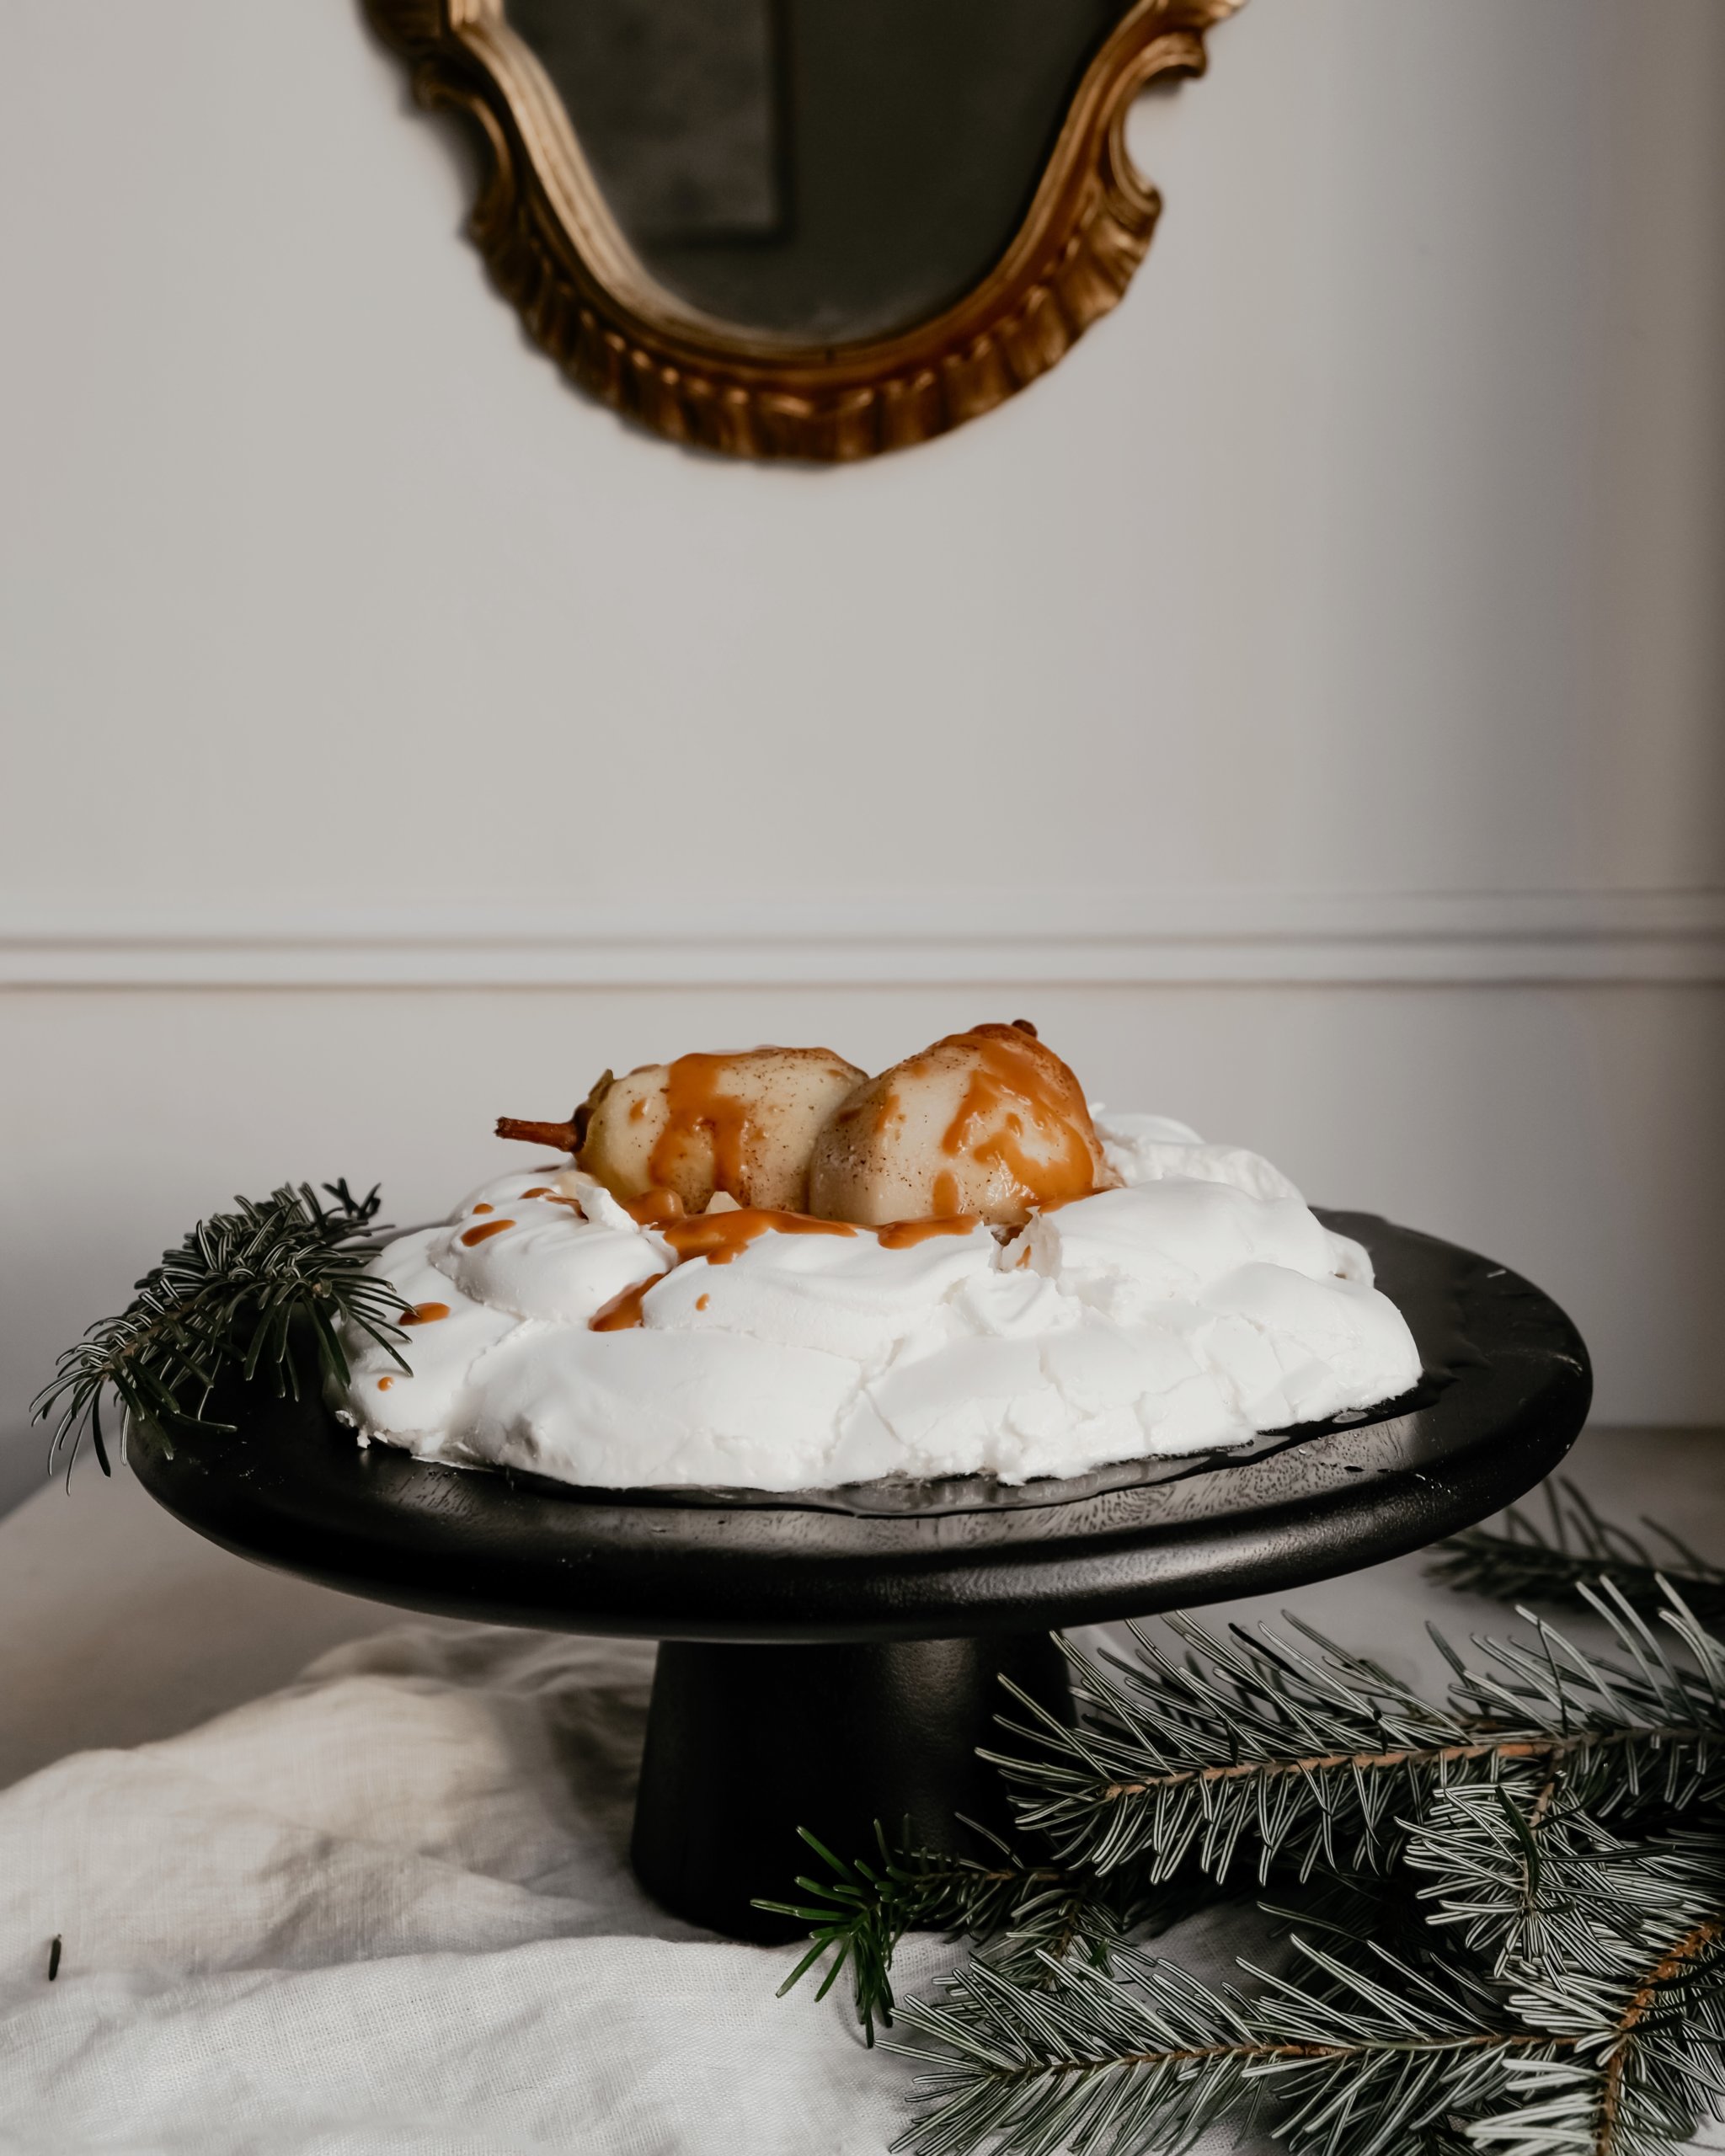 Menu de Noël, dessert : Pavlova aux poires